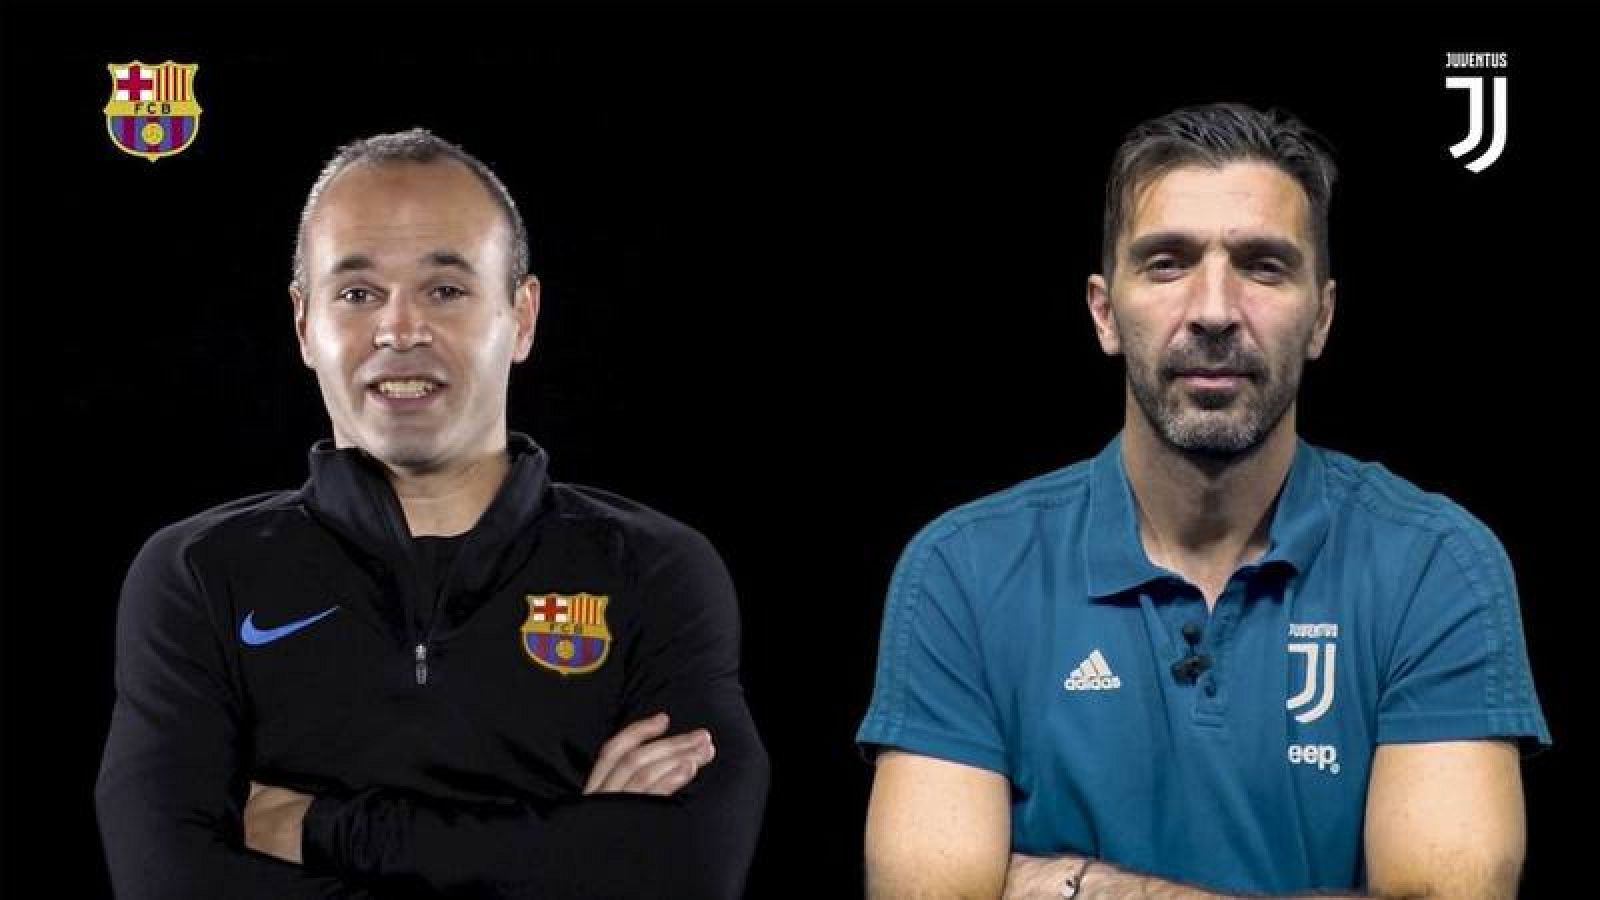 Imagen del cara a cara virtual organizado por el Barça, entre Iniesta y Buffon.